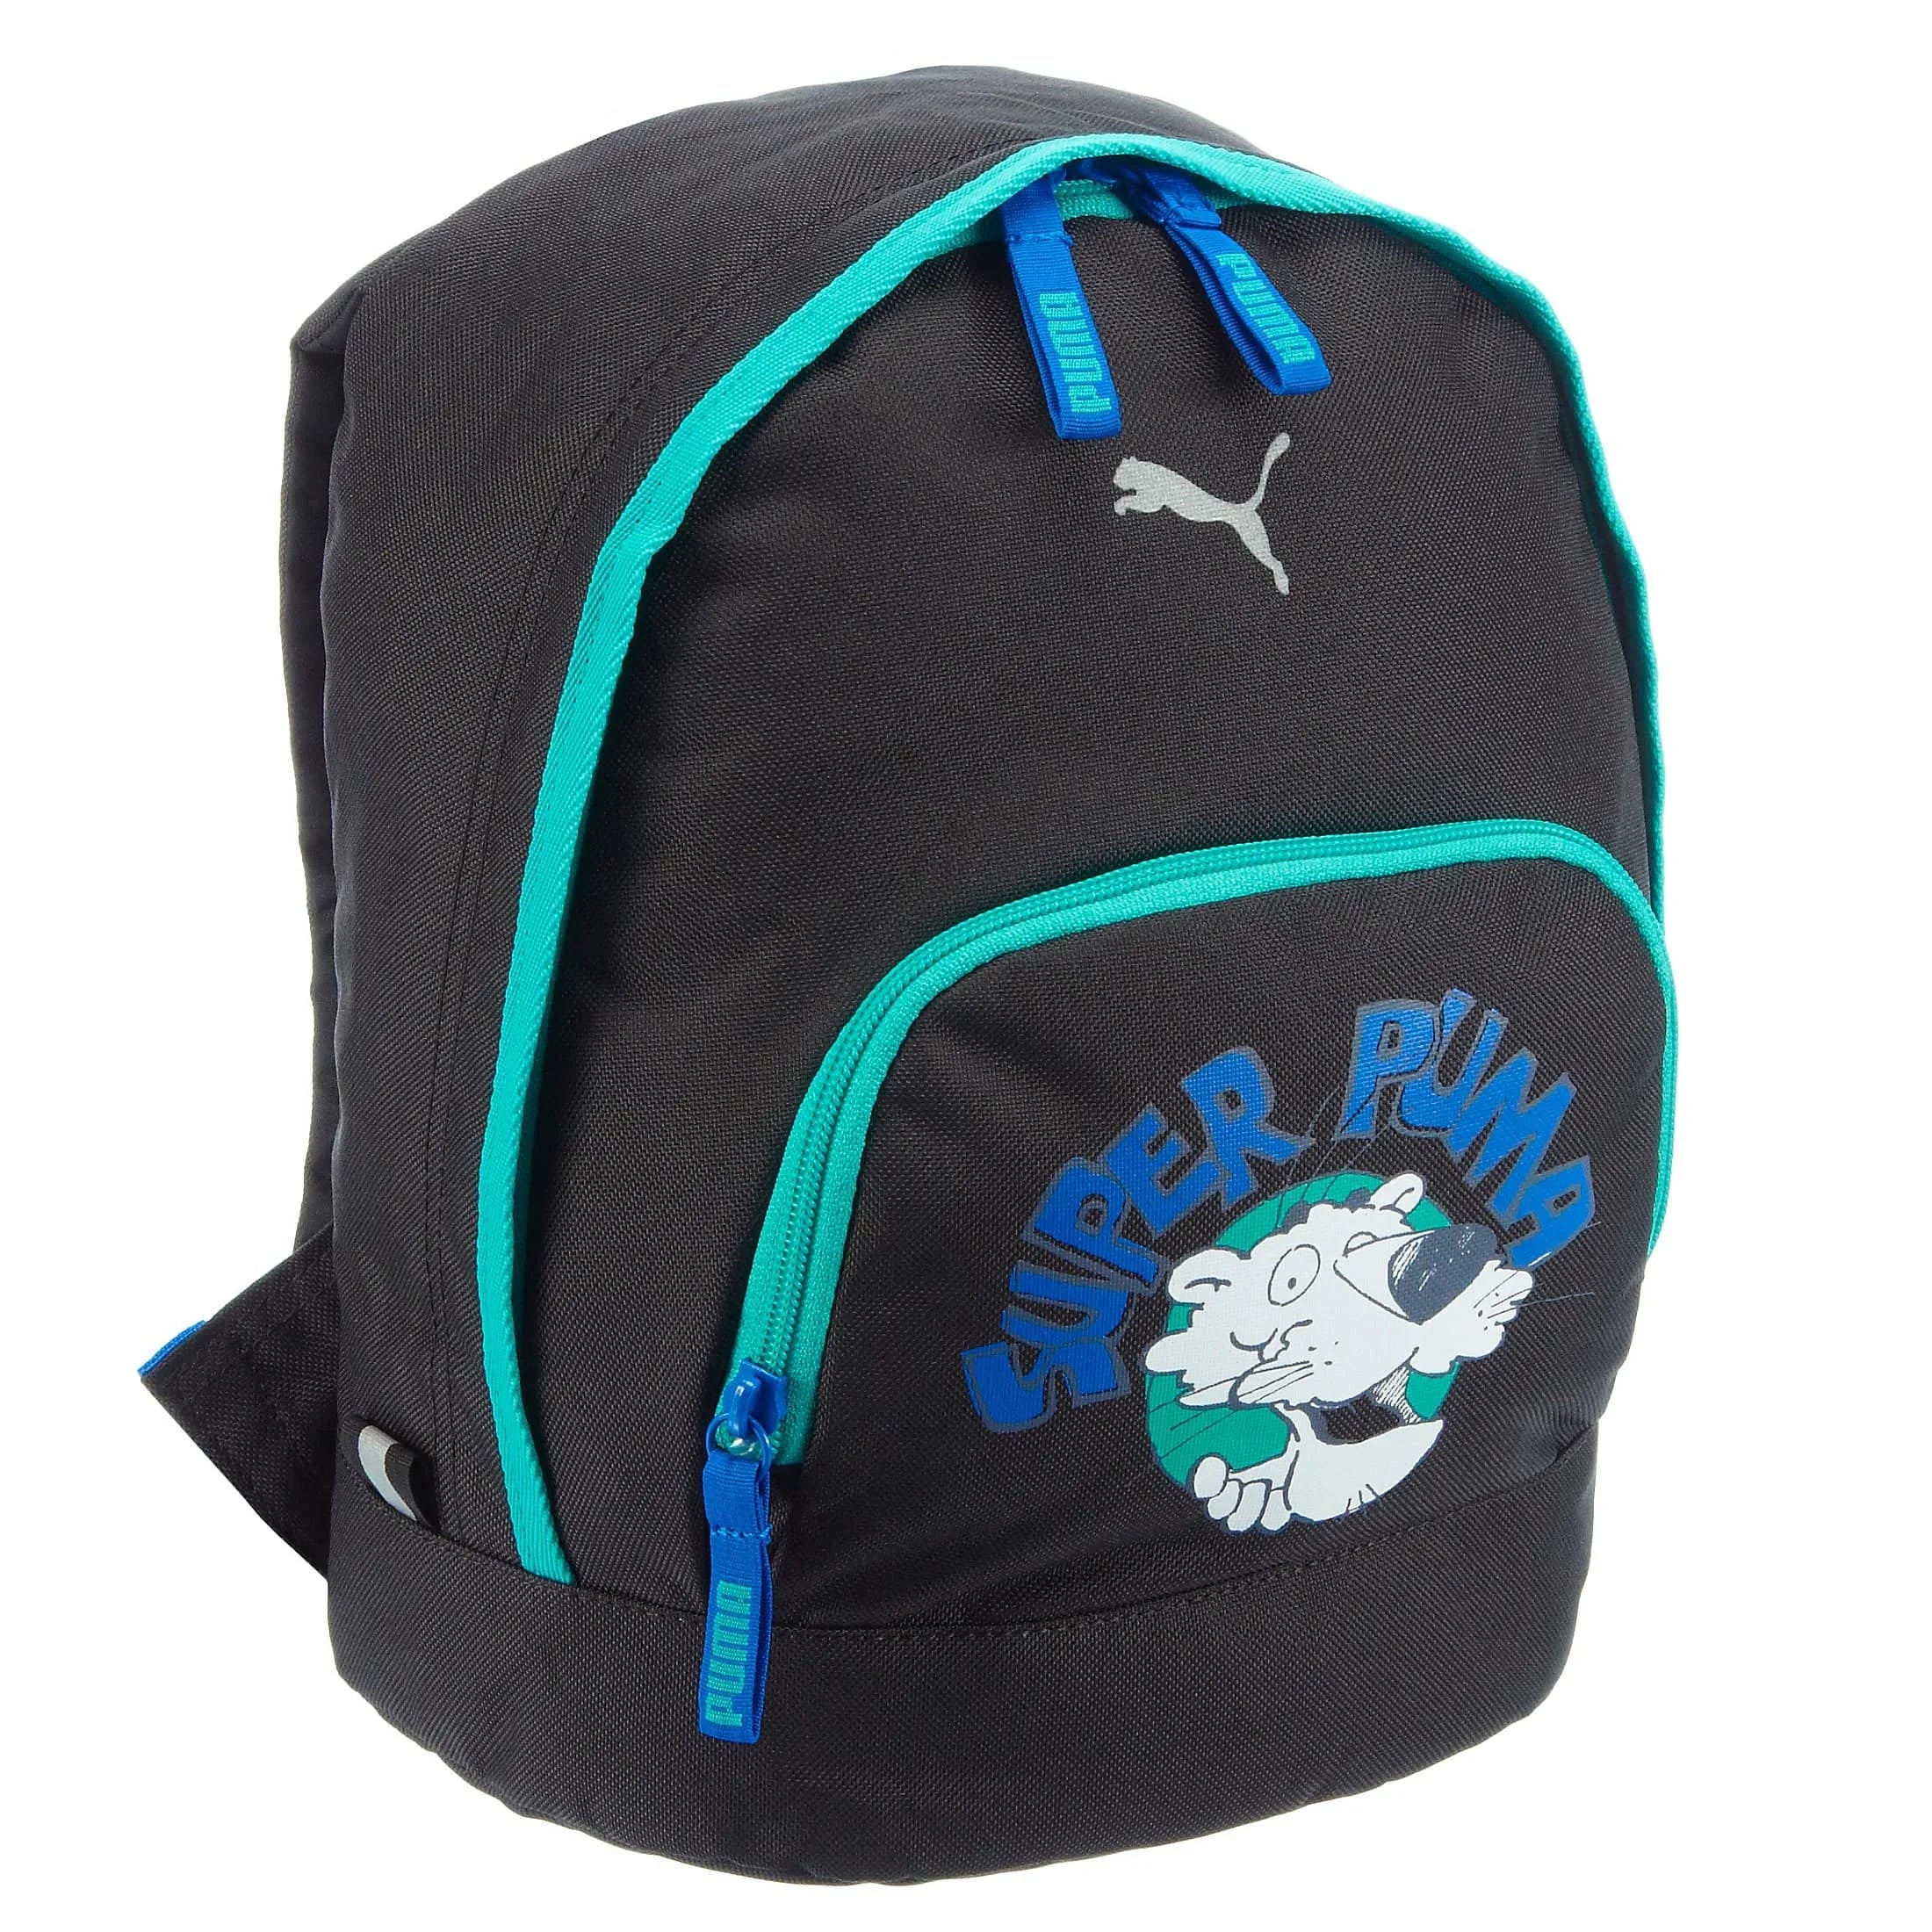 Puma Primary Small Backpack Sac à dos 28 cm - calypso corail-oiseau graphique